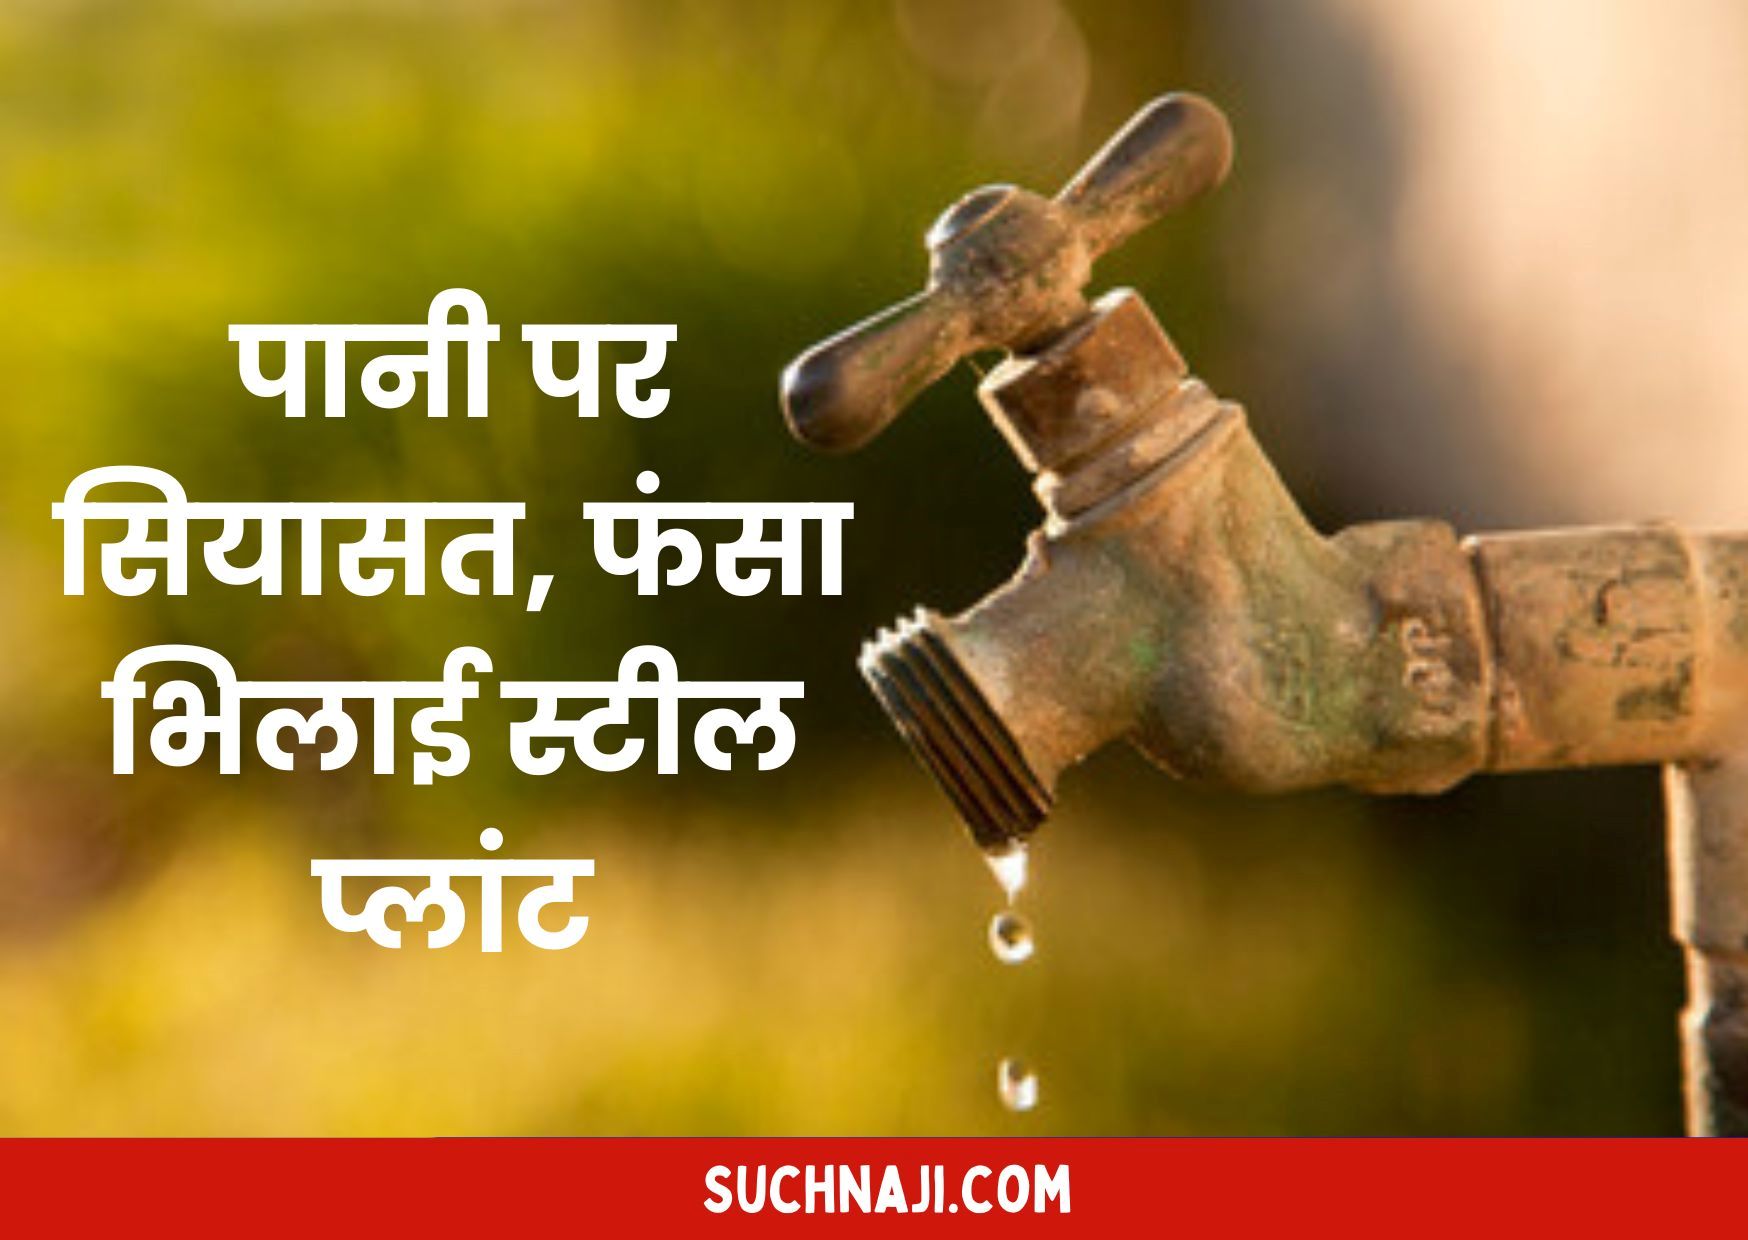 Bhilai Township: पानी चालू कराने का श्रेय लेने वाले क्या अब पानी बंद कराने की लेंगे जिम्मेदारी…